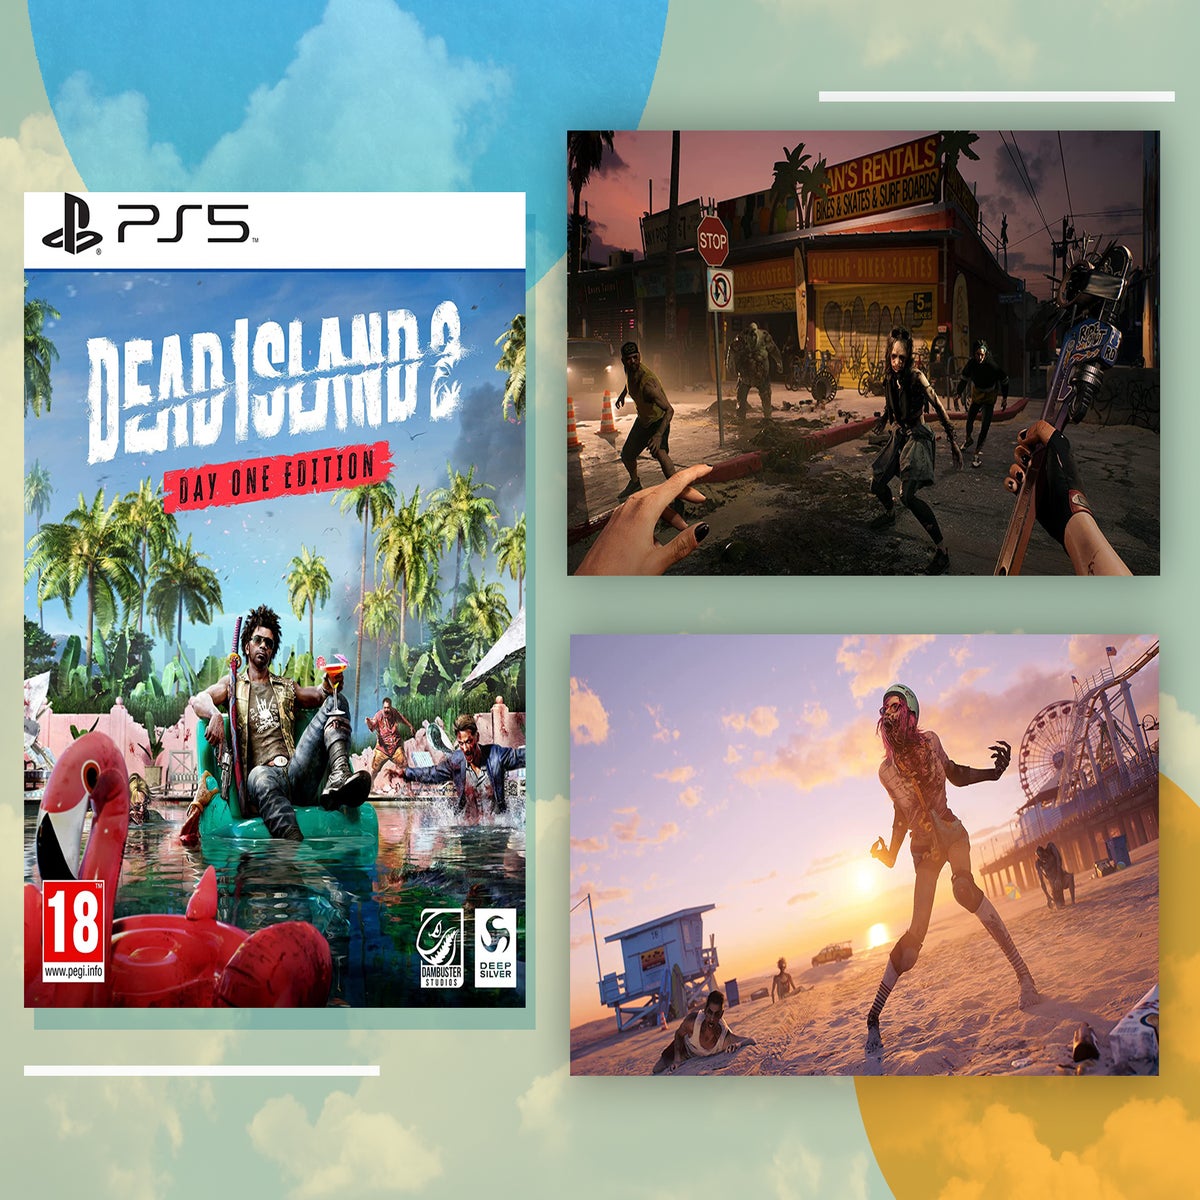 Dead Island 2 is in active development